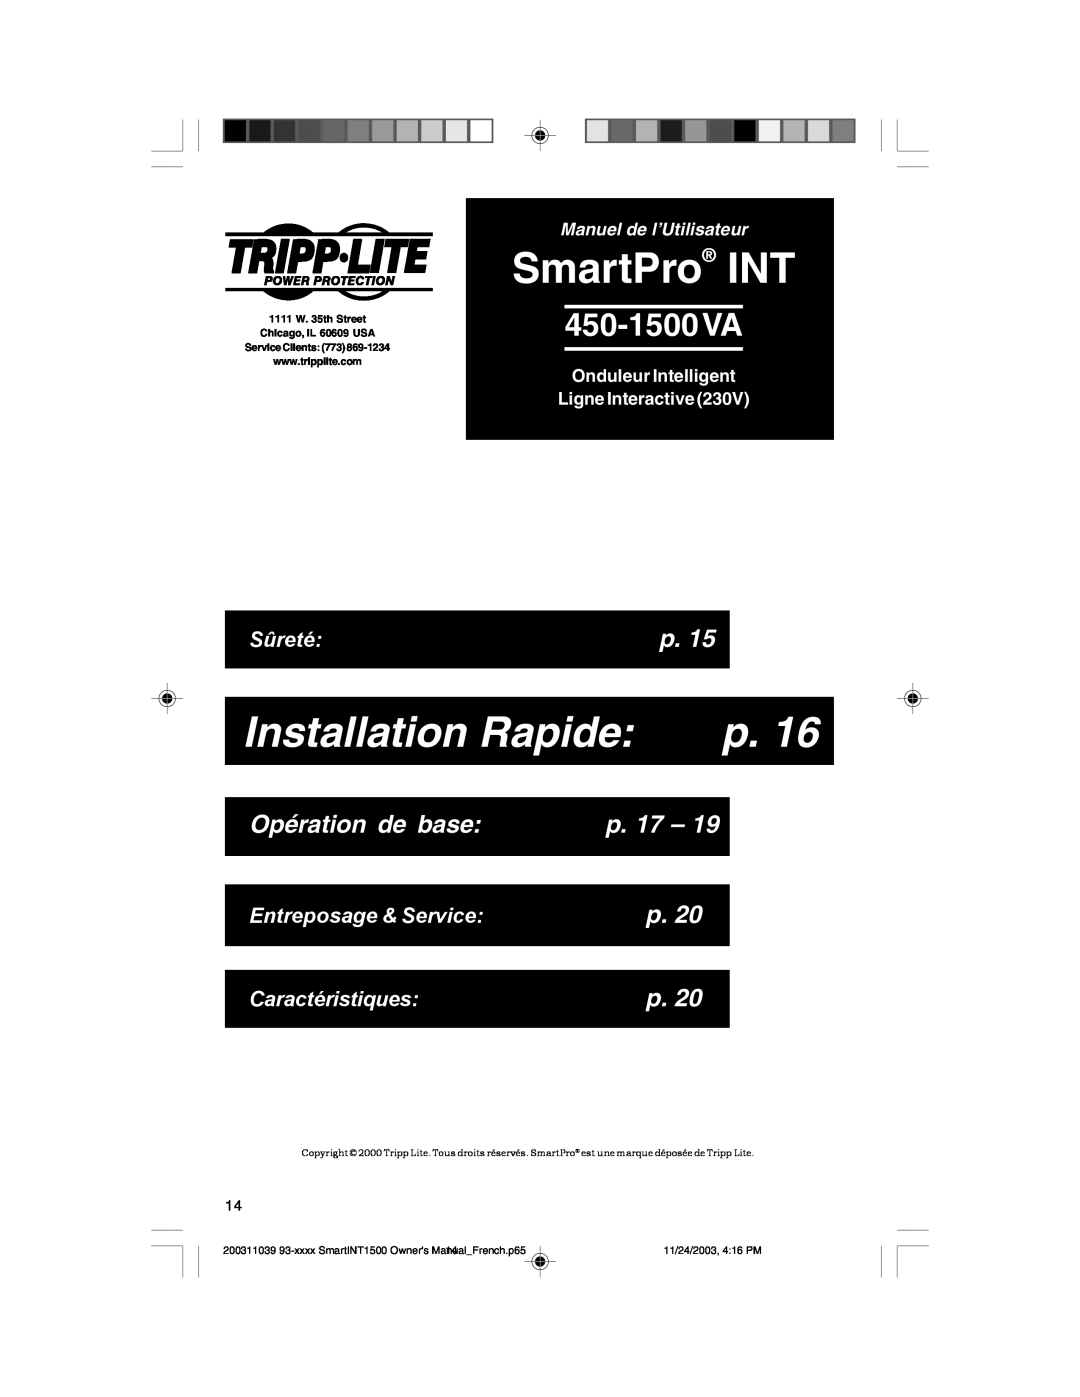 Tripp Lite 450-1500VA Installation Rapide, Opération de base, p. 17, Manuel de l’Utilisateur, SmartPro INT, Sûreté 